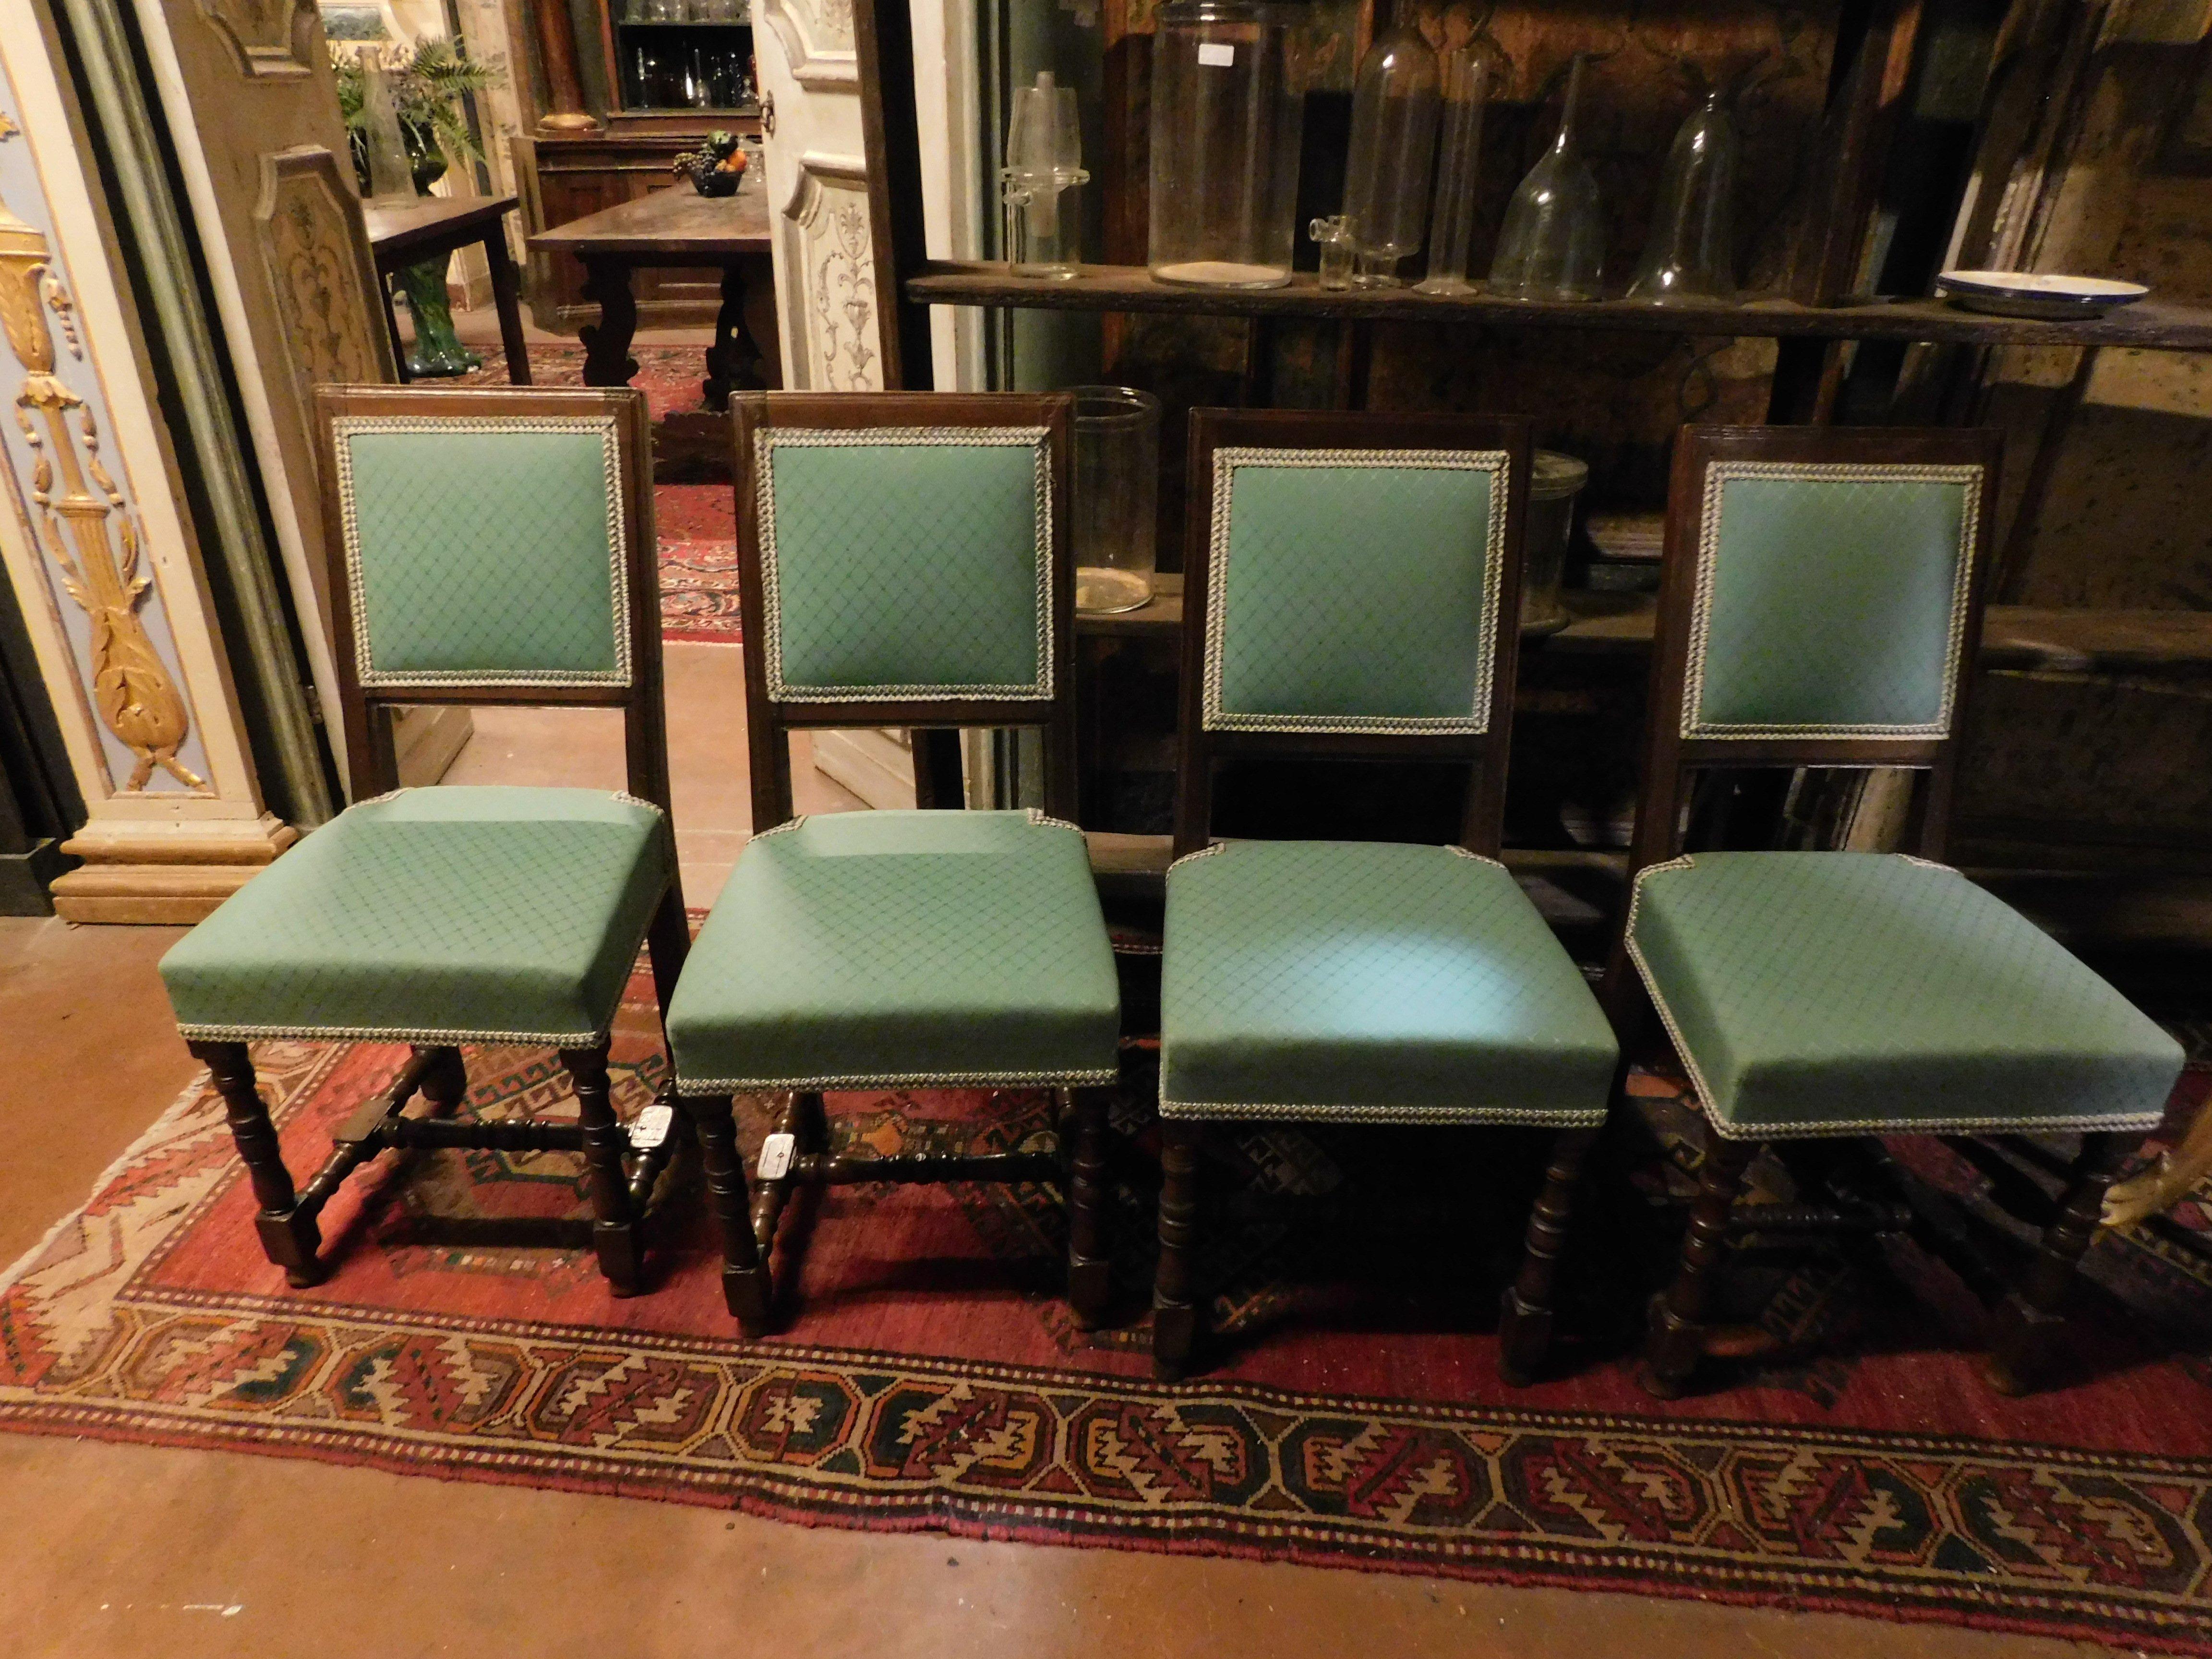 Antique et rare ensemble de 4 chaises en noyer, sculptées à la main avec type de bobine, tapisserie verte/bleue remplacée à neuf, original des années 1600, provenant d'une résidence italienne, excellent comme ensemble de salle à manger, peut-être